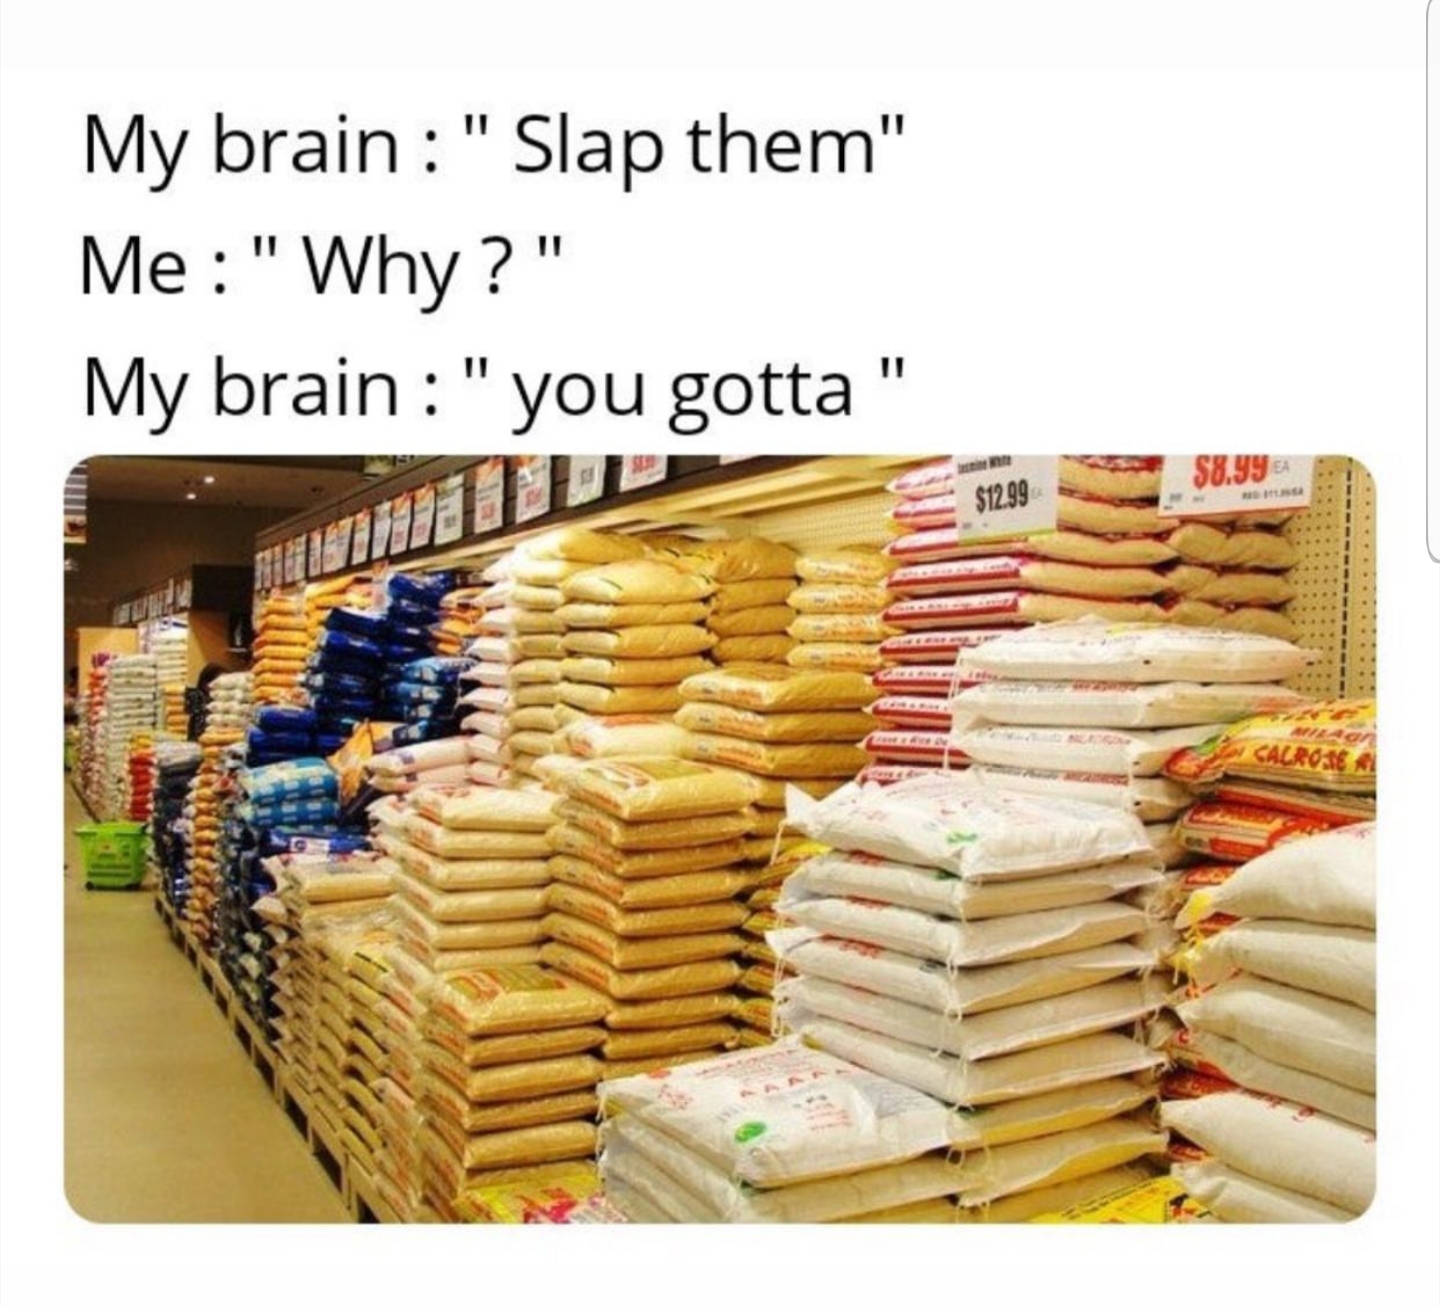 snack - My brain " Slap them" Me"Why?" My brain " you gotta